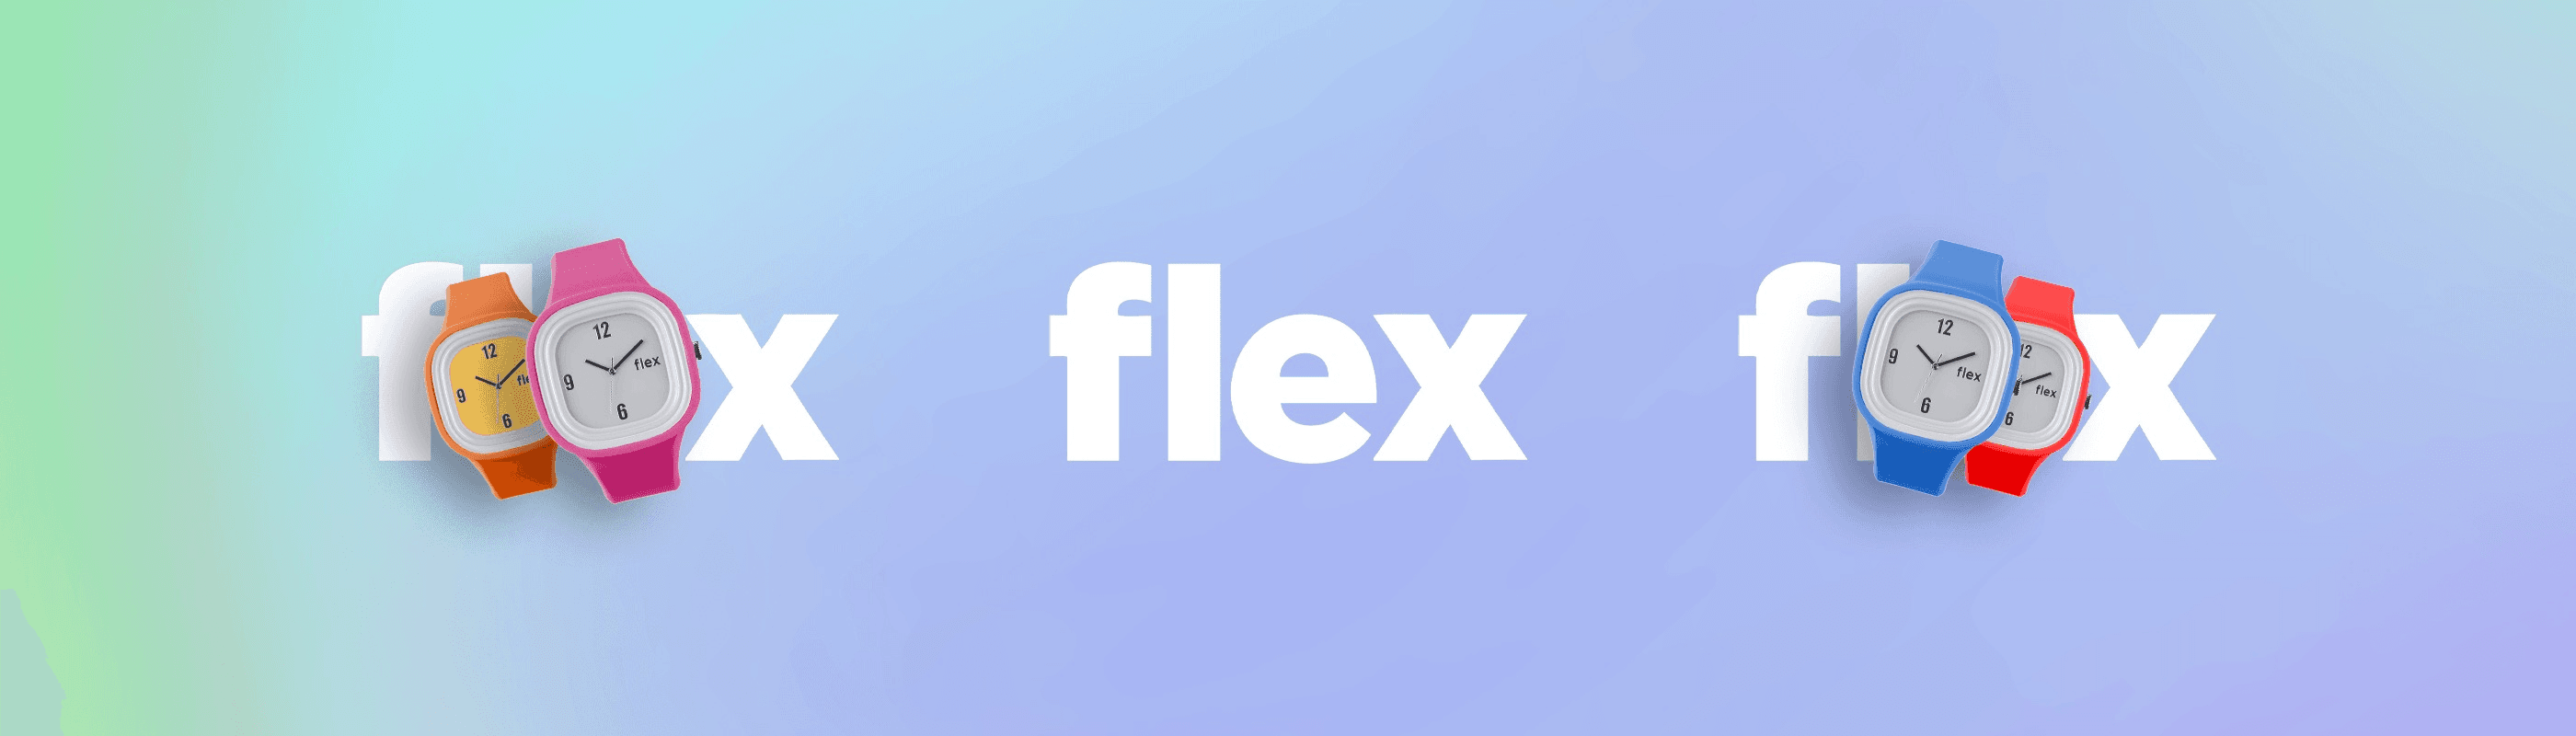 FlexContractWallet 橫幅